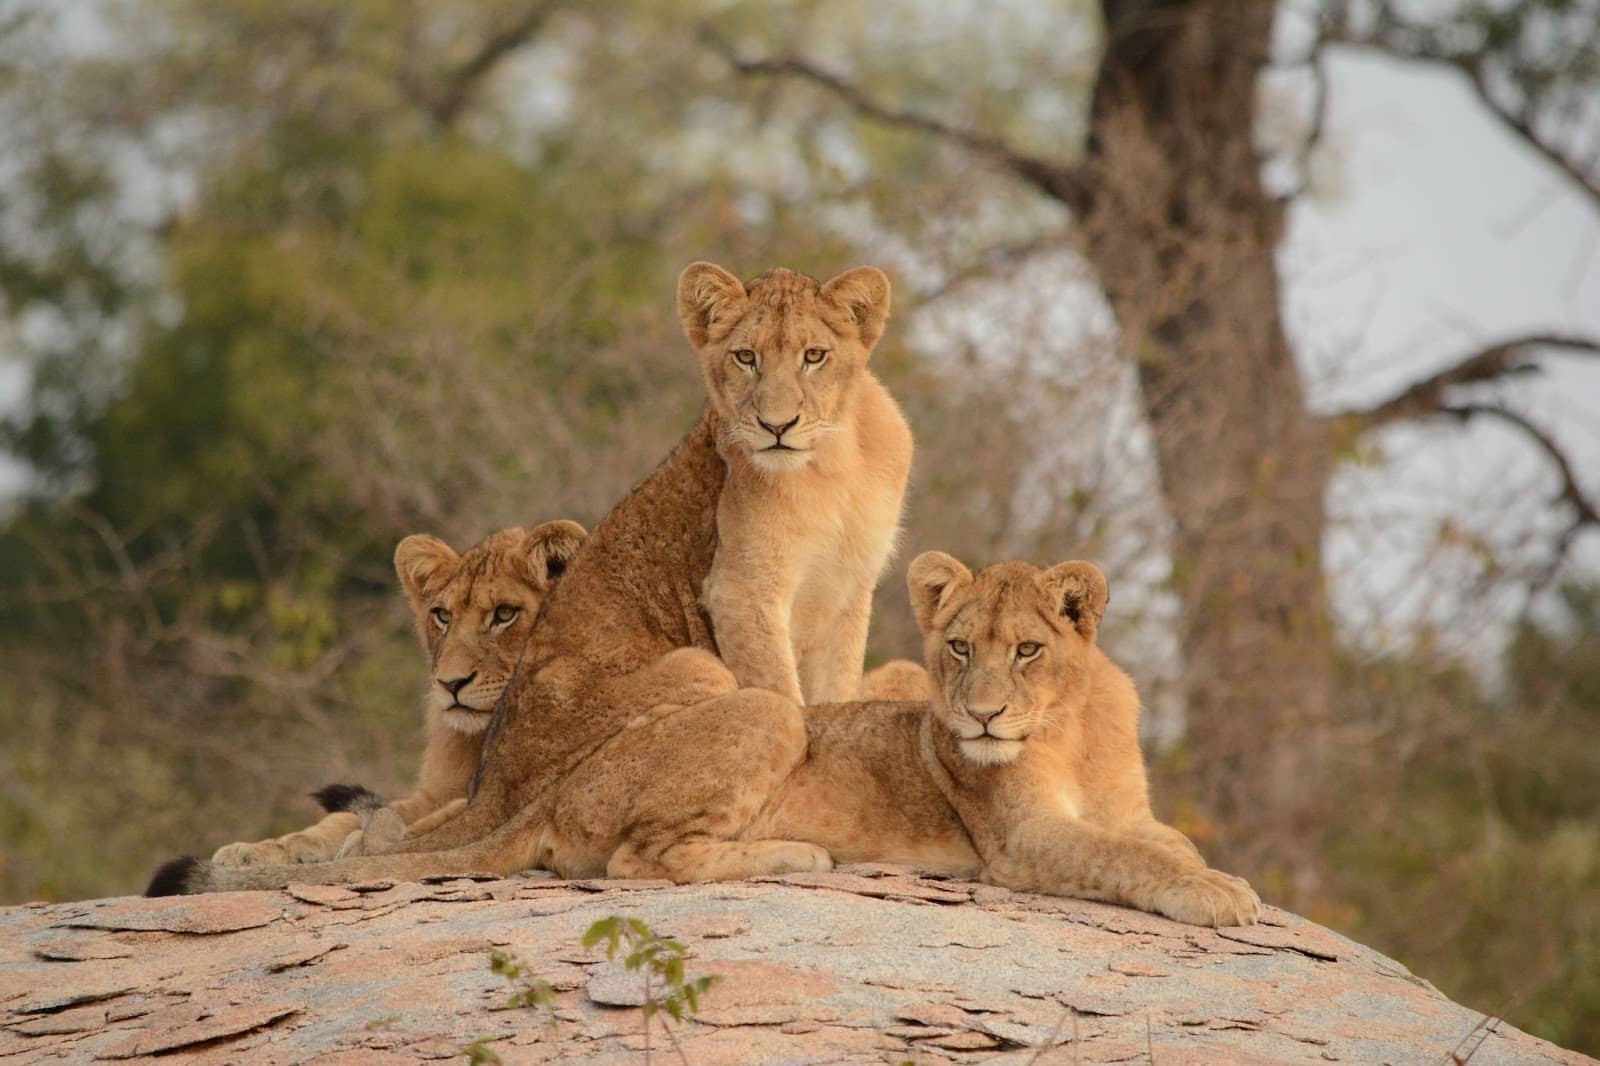 Krugerin kansallispuisto: Safari